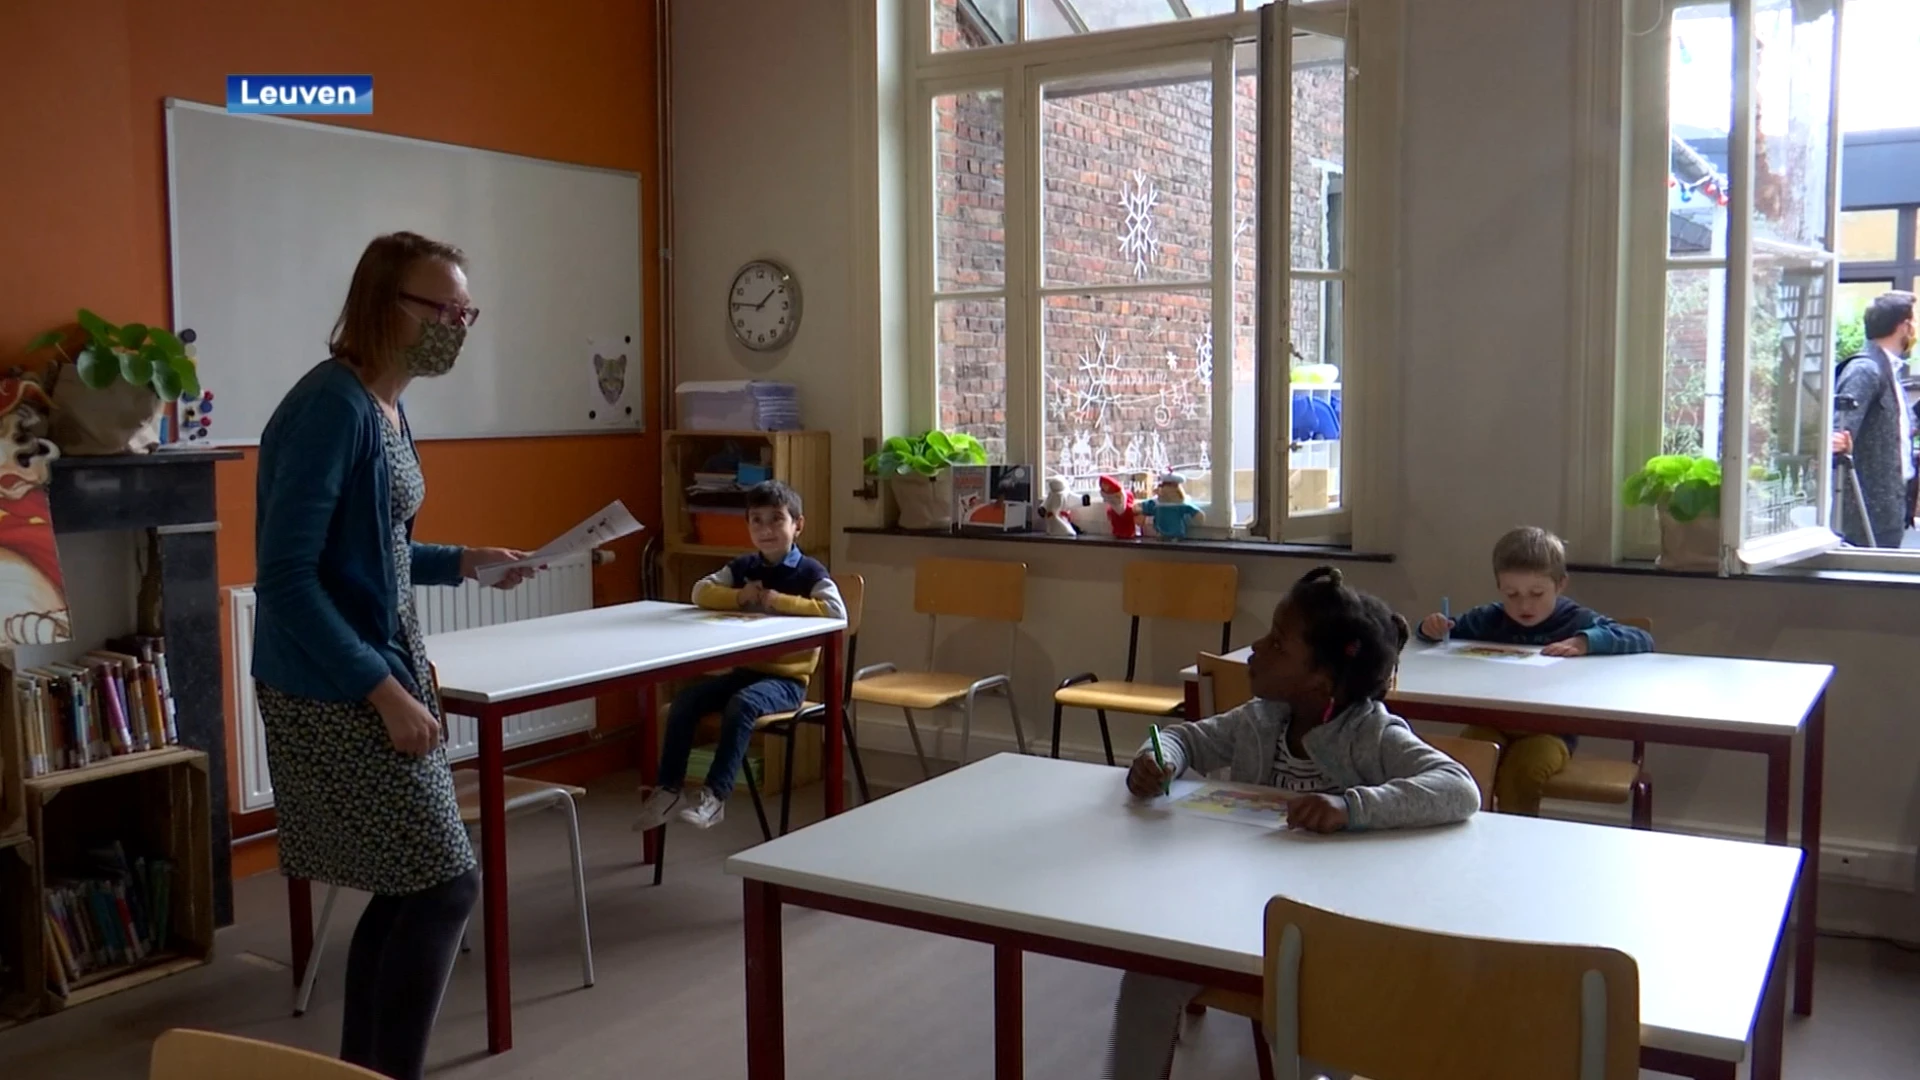 Basisscholen in Leuven, Bierbeek en Herent houden digitale kijkdag voor ouders